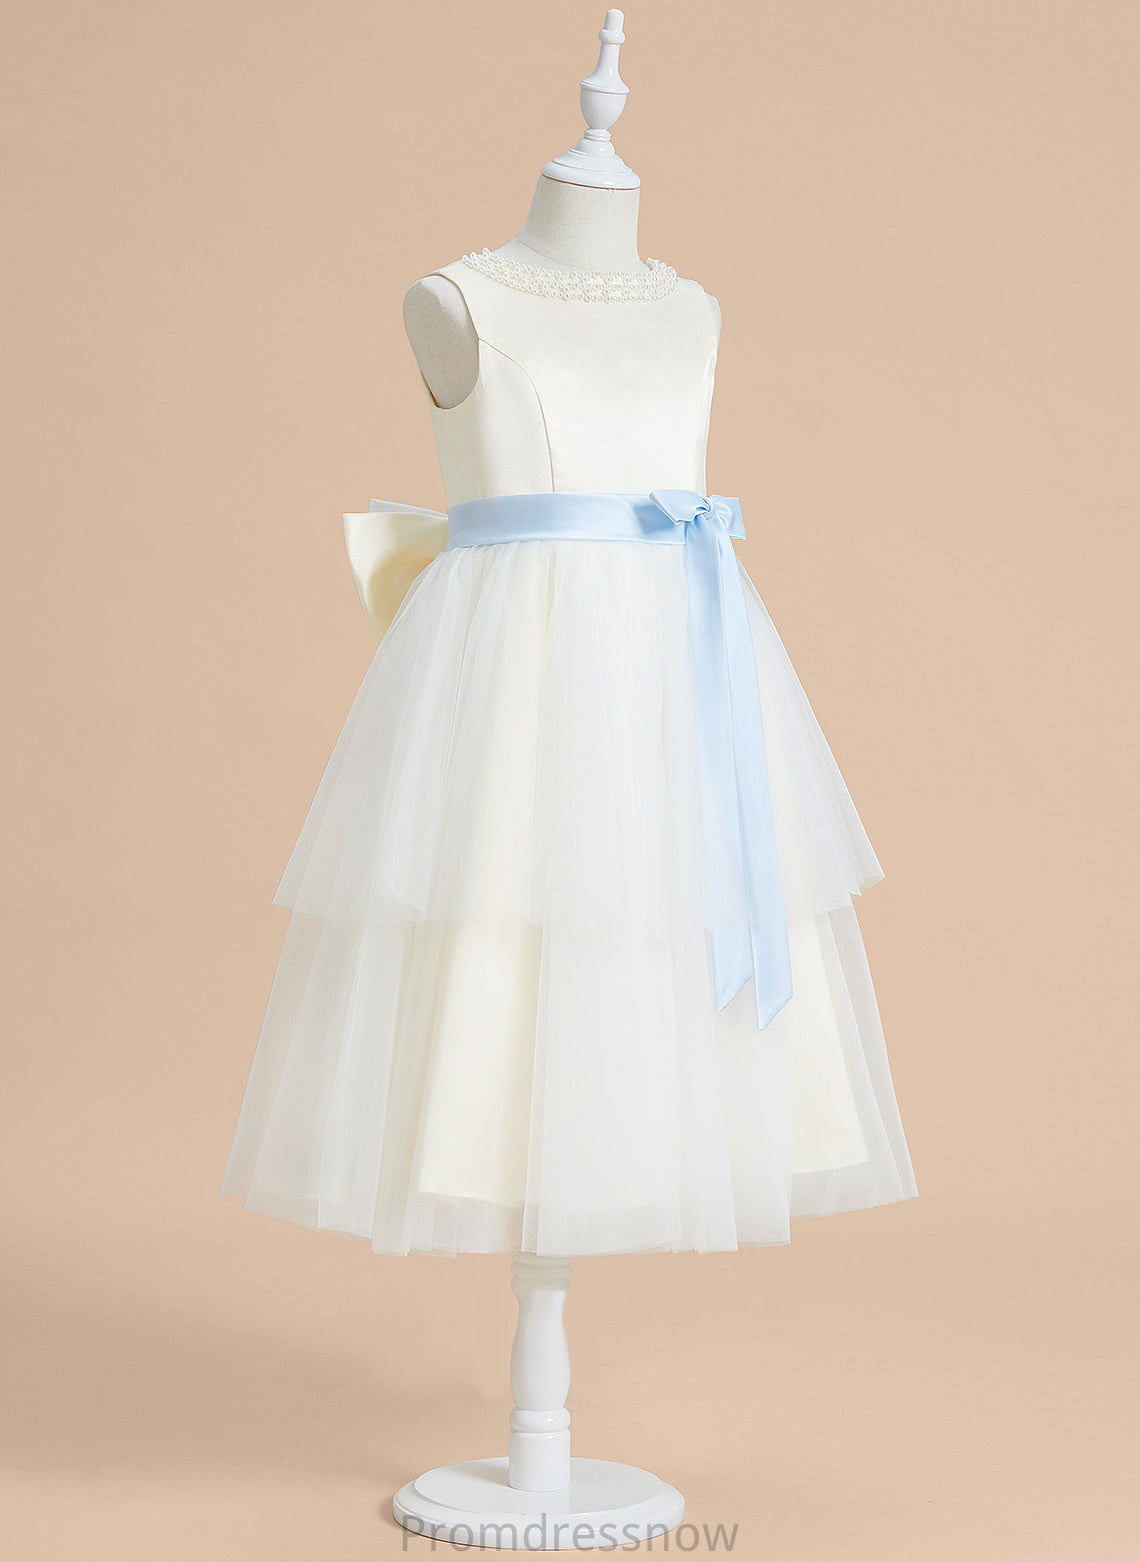 A-Line Sash/Beading/Bow(s) With Flower Girl Dresses Girl Sleeveless Audrey - Flower Satin/Tulle Dress Scoop Neck Tea-length